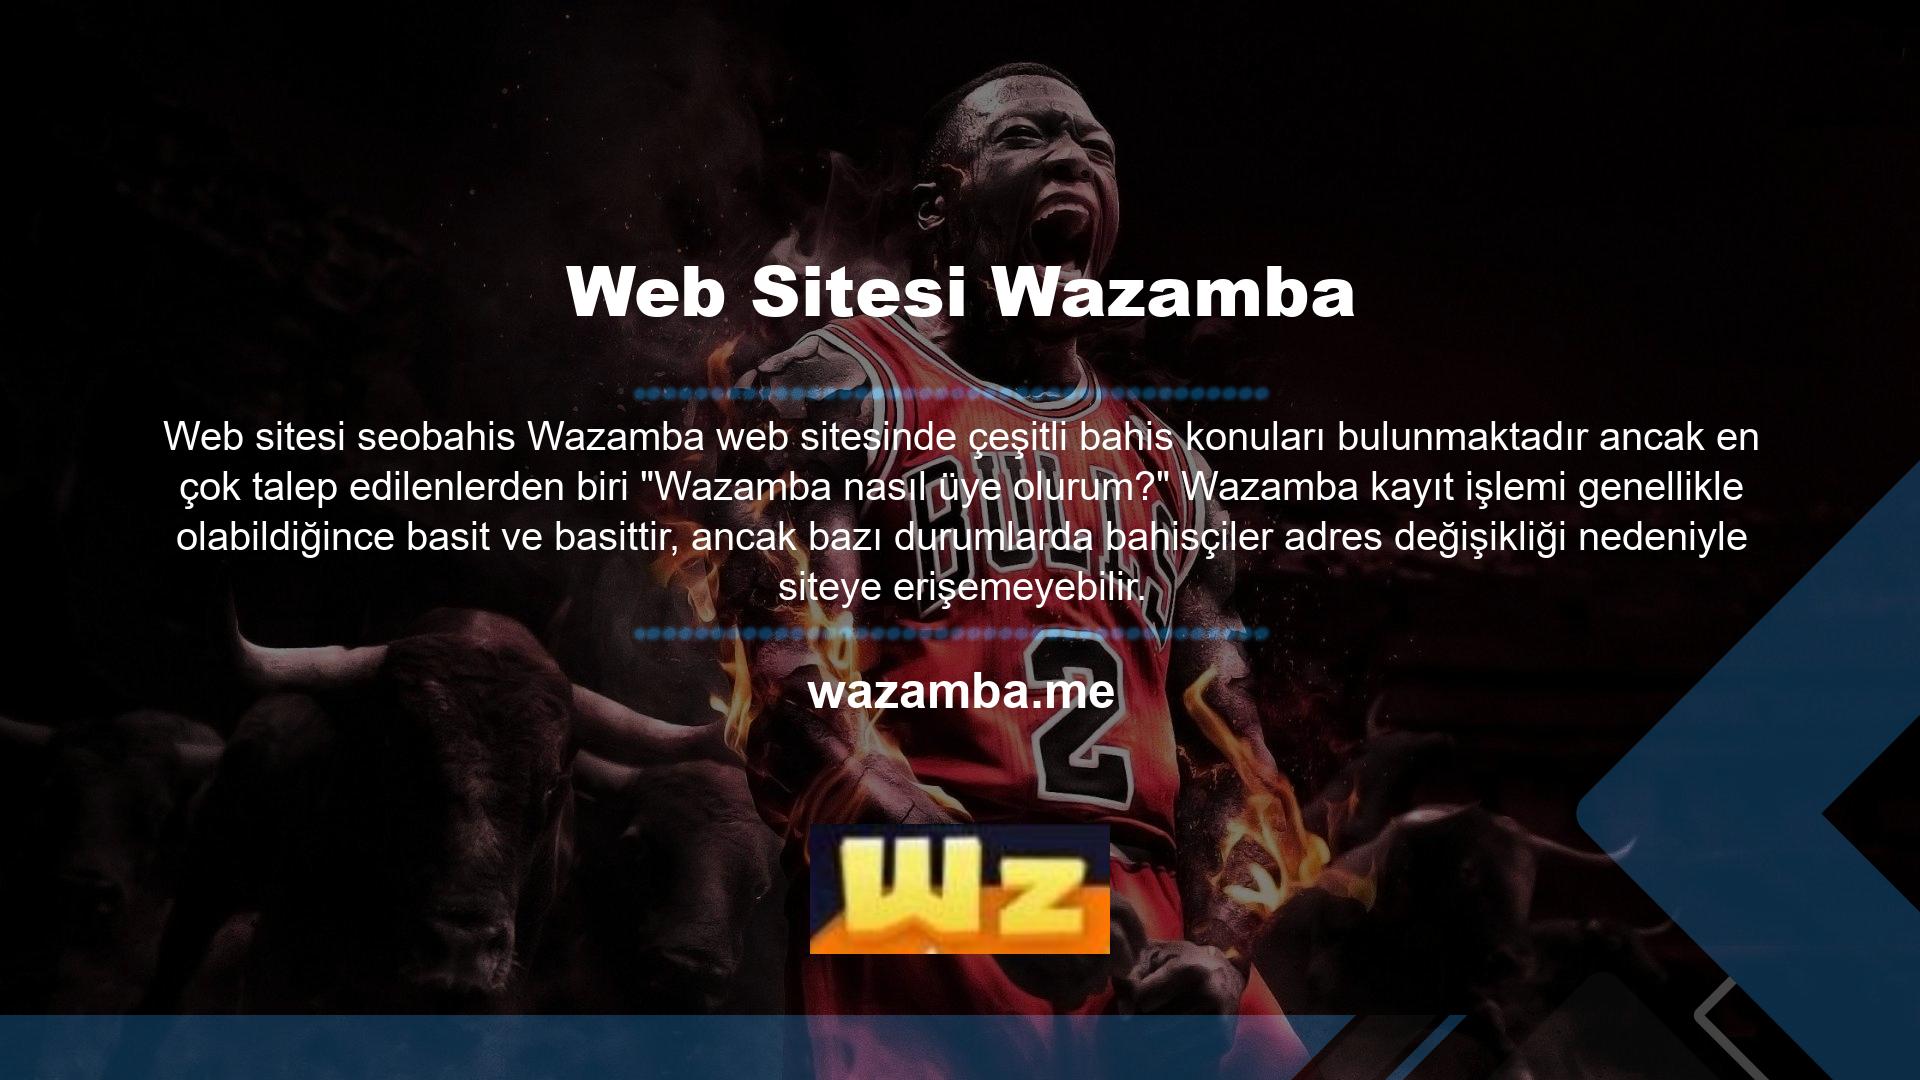 Wazamba, bilgisayarlarında veya cep telefonlarında bir arama motoruna girerek ve açılan ana sayfanın sağ üst köşesinde bulunan "Giriş Yap" menüsünü kullanarak bir adres arayabilirler